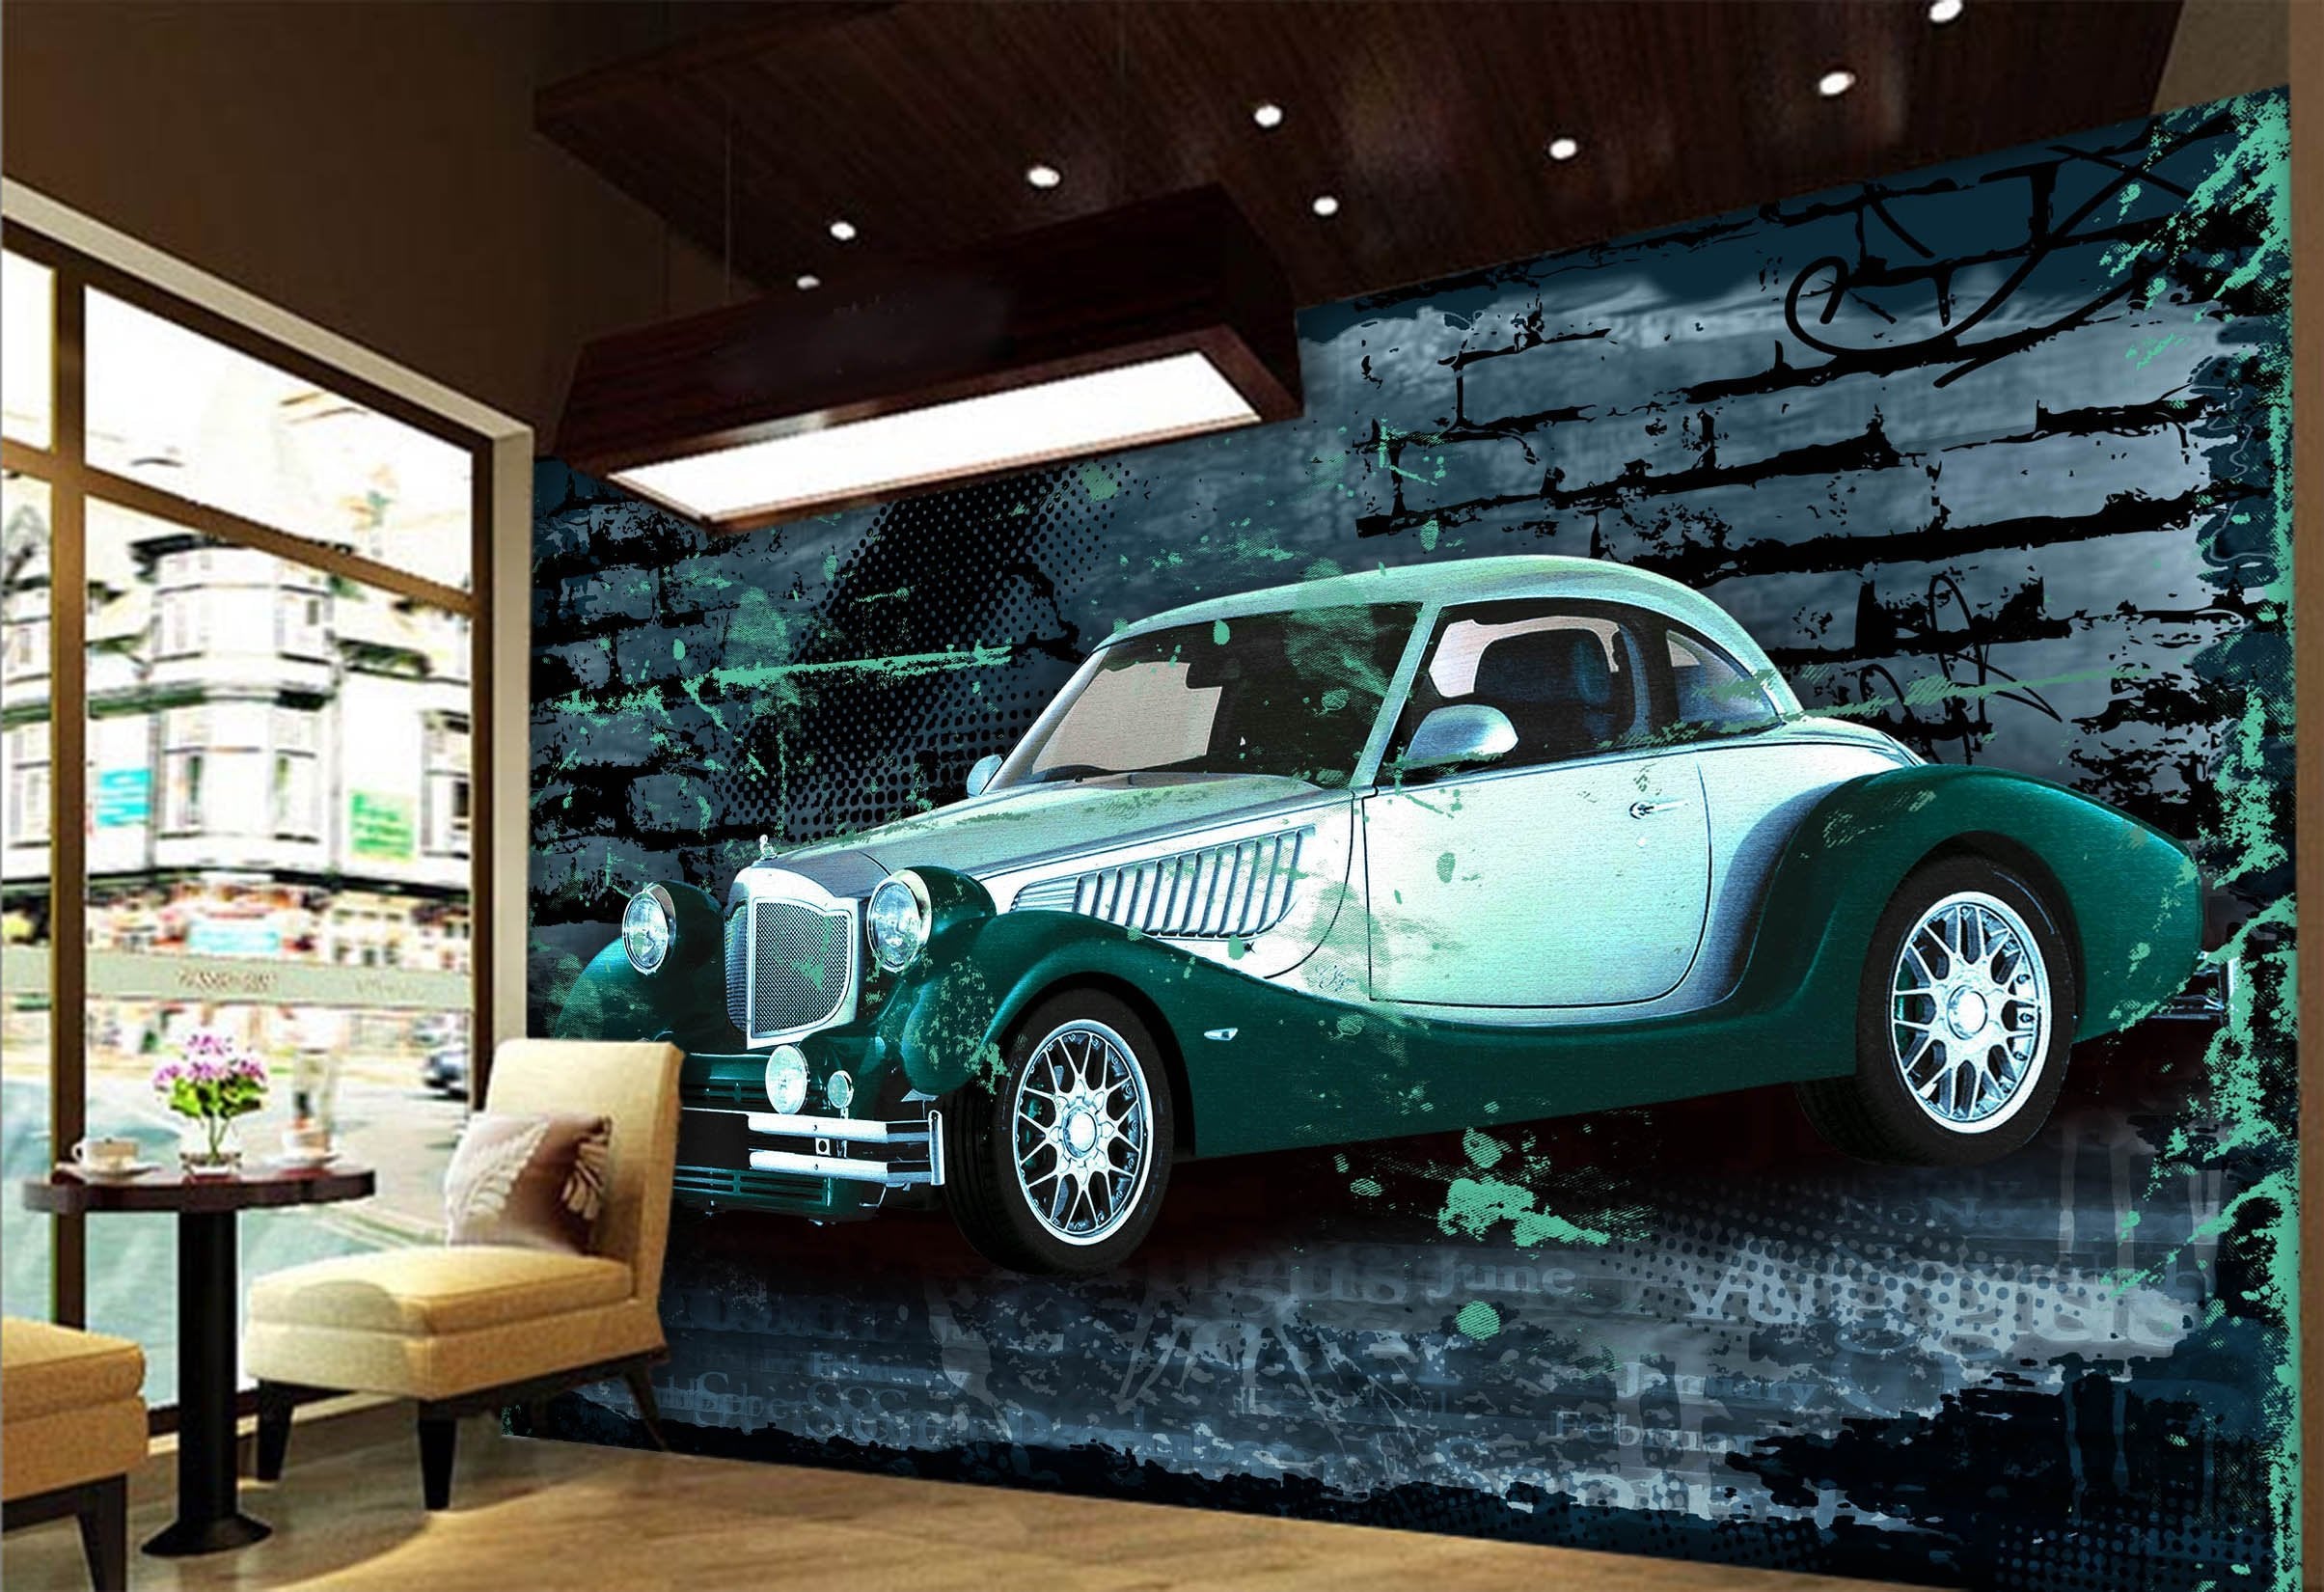 3D Antique Car 045 Wallpaper AJ Wallpaper 